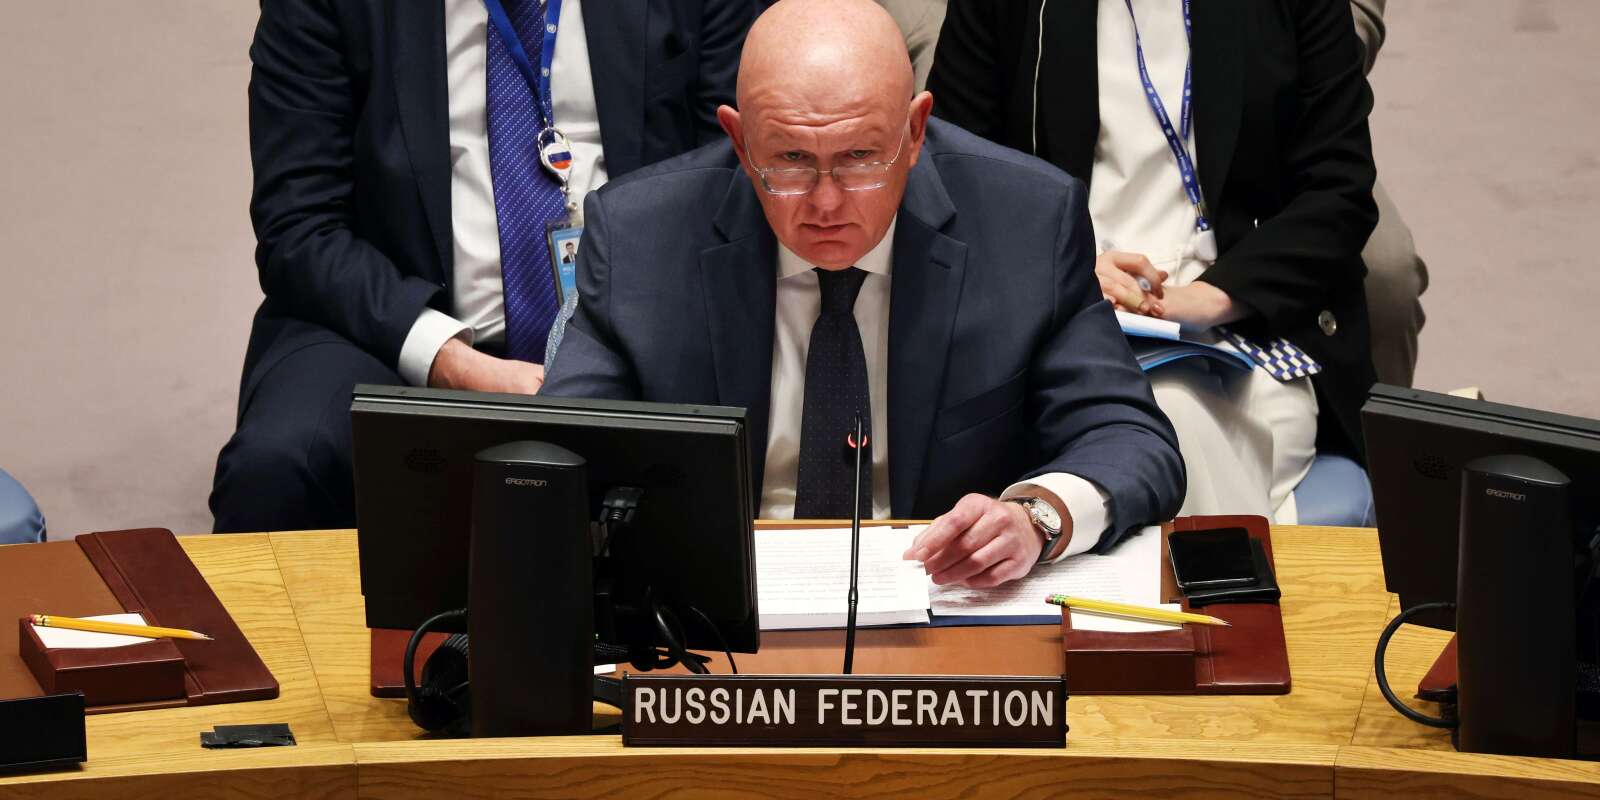 L’ambassadeur de Russie auprès des Nations Unies Vassily Nebenzia s’exprime lors d’une réunion du Conseil de sécurité des Nations unies sur la situation à la centrale nucléaire de Zaporijia, le 6 septembre 2022 à New York.